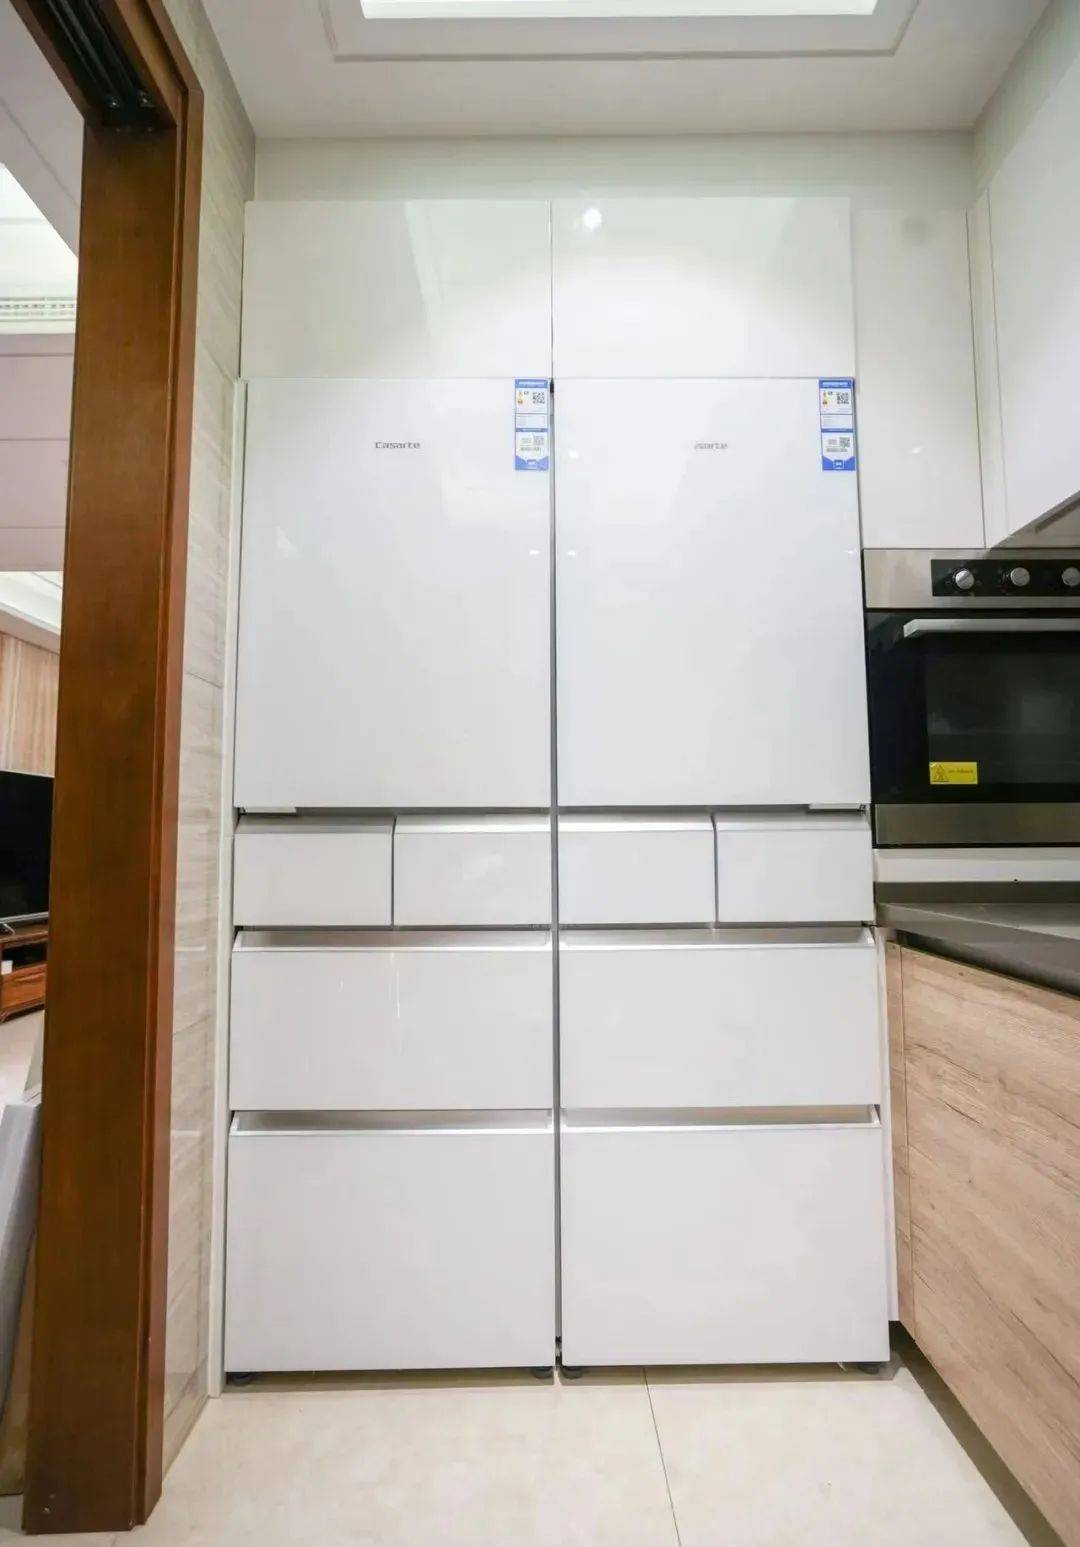 2021年客餐厅设计热点！嵌入式冰箱+餐边柜设计怎样？冰箱橱柜安装设计怎样避坑？ - 知乎